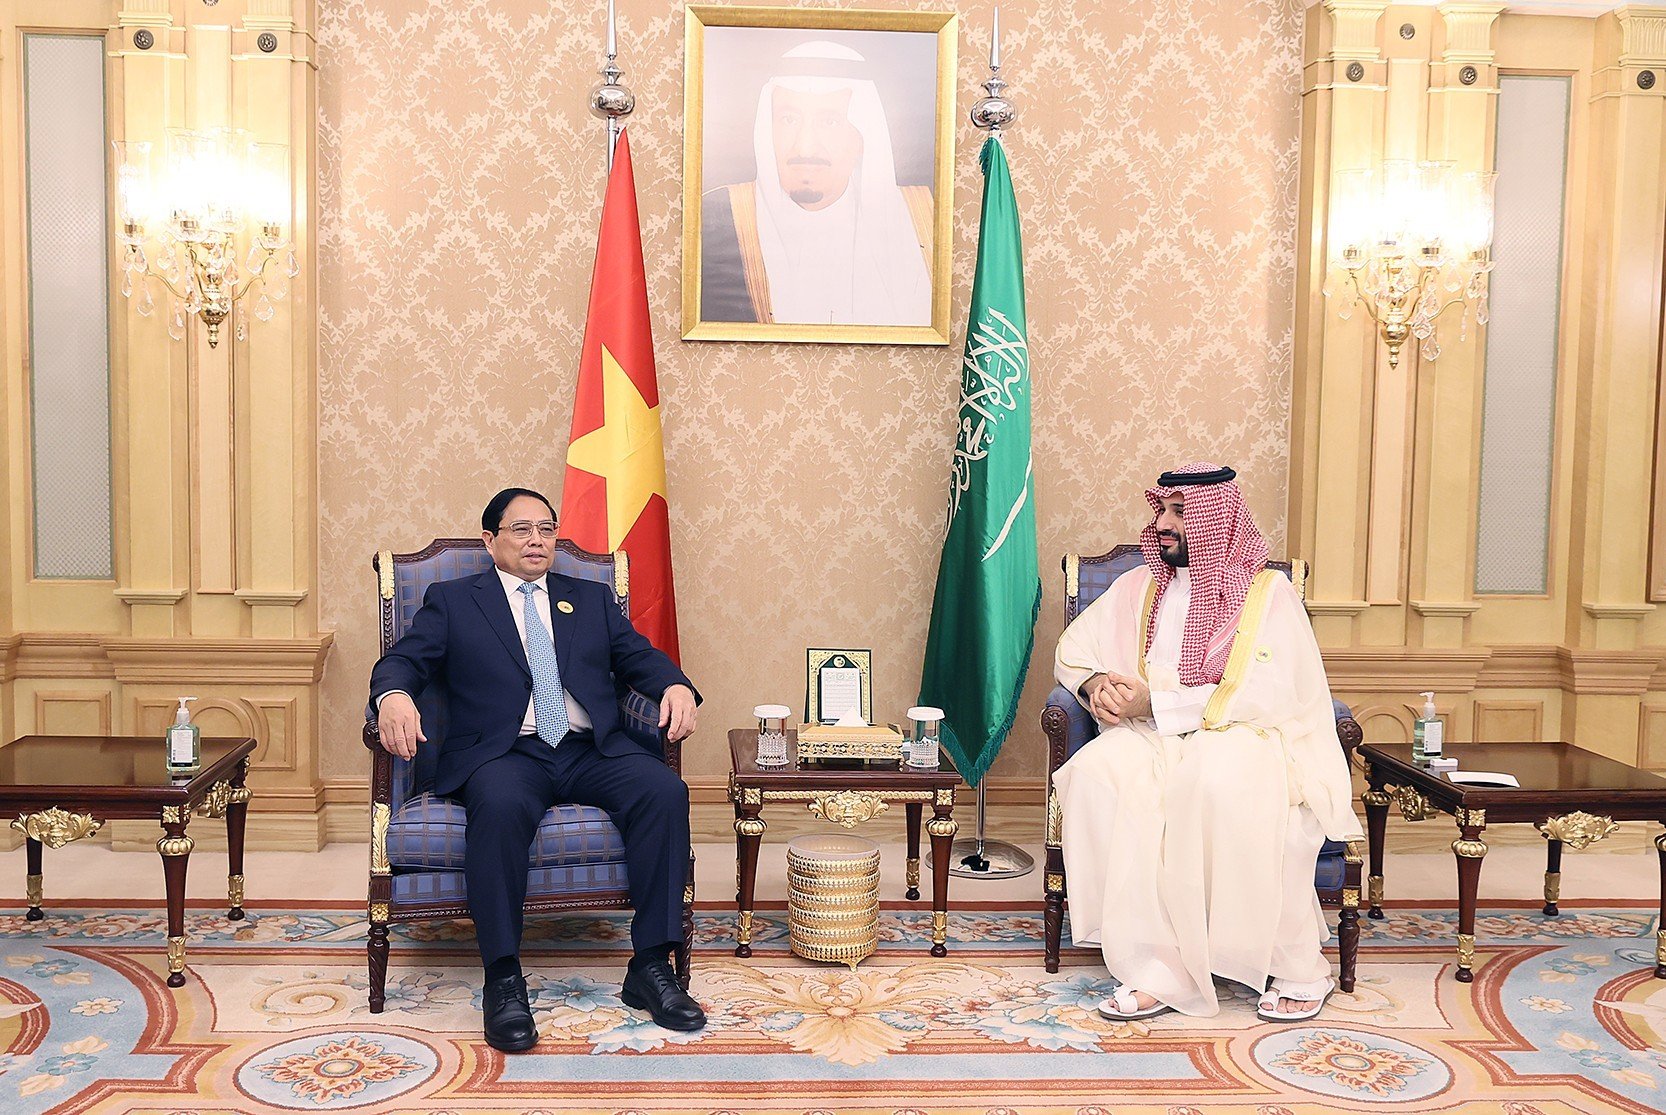 Thủ tướng Phạm Minh Chính chúc mừng Saudi Arabia đã đưa ra ý tưởng và tổ chức thành công Hội nghị cấp cao đầu tiên, mang ý nghĩa lịch sử của ASEAN và GCC - Ảnh: VGP